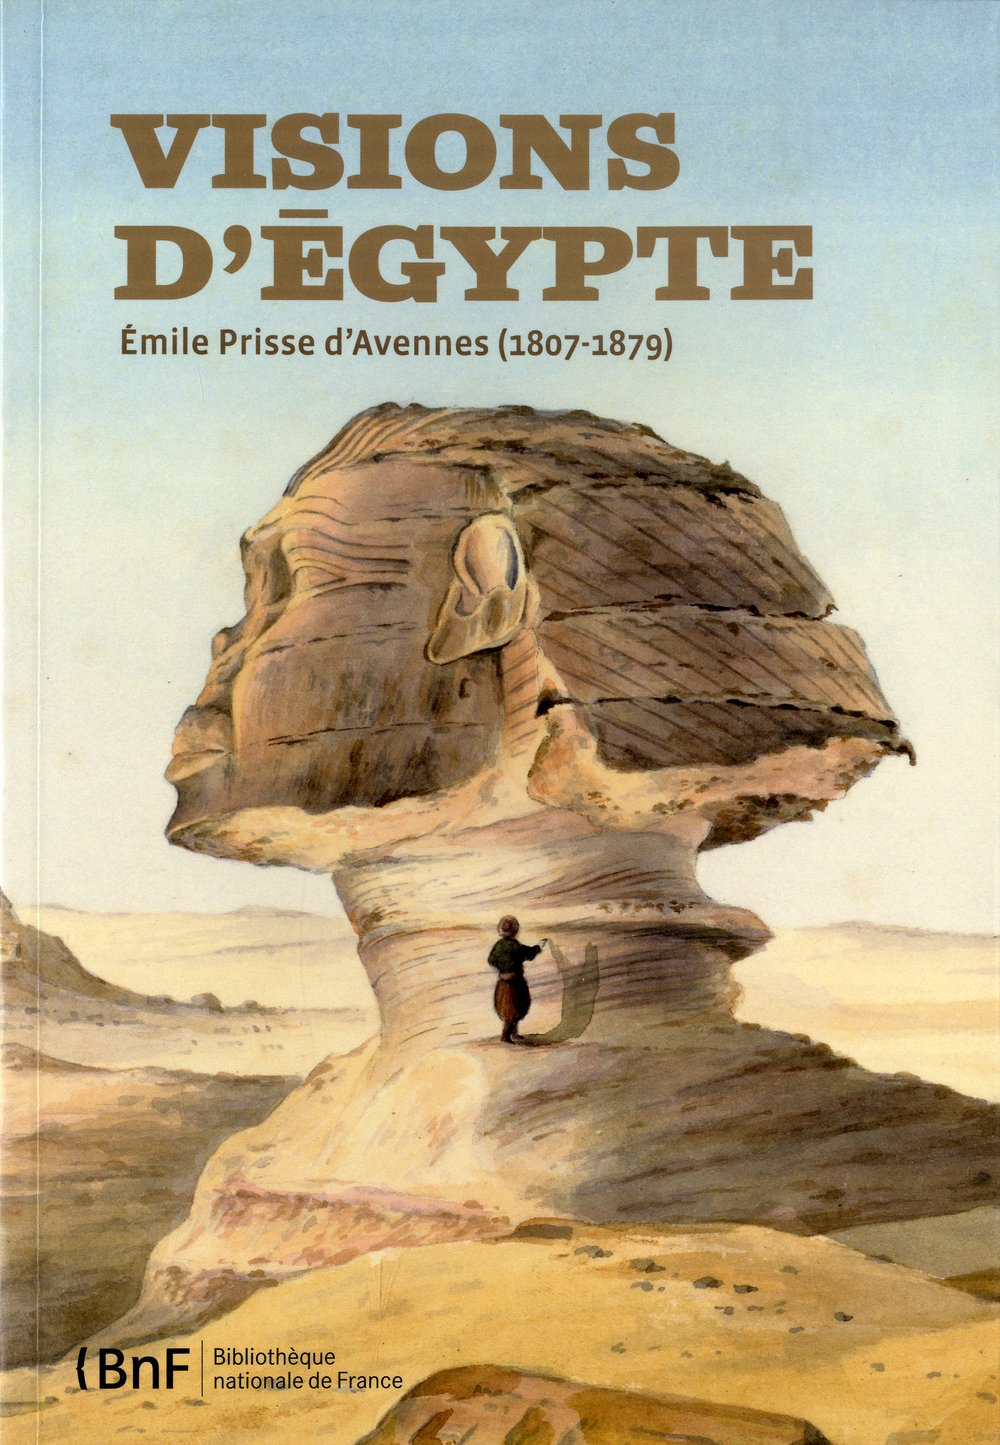 Vision d'Egypte. Emile Prisse d'Avennes (1807-1879), 2011, 159 p.